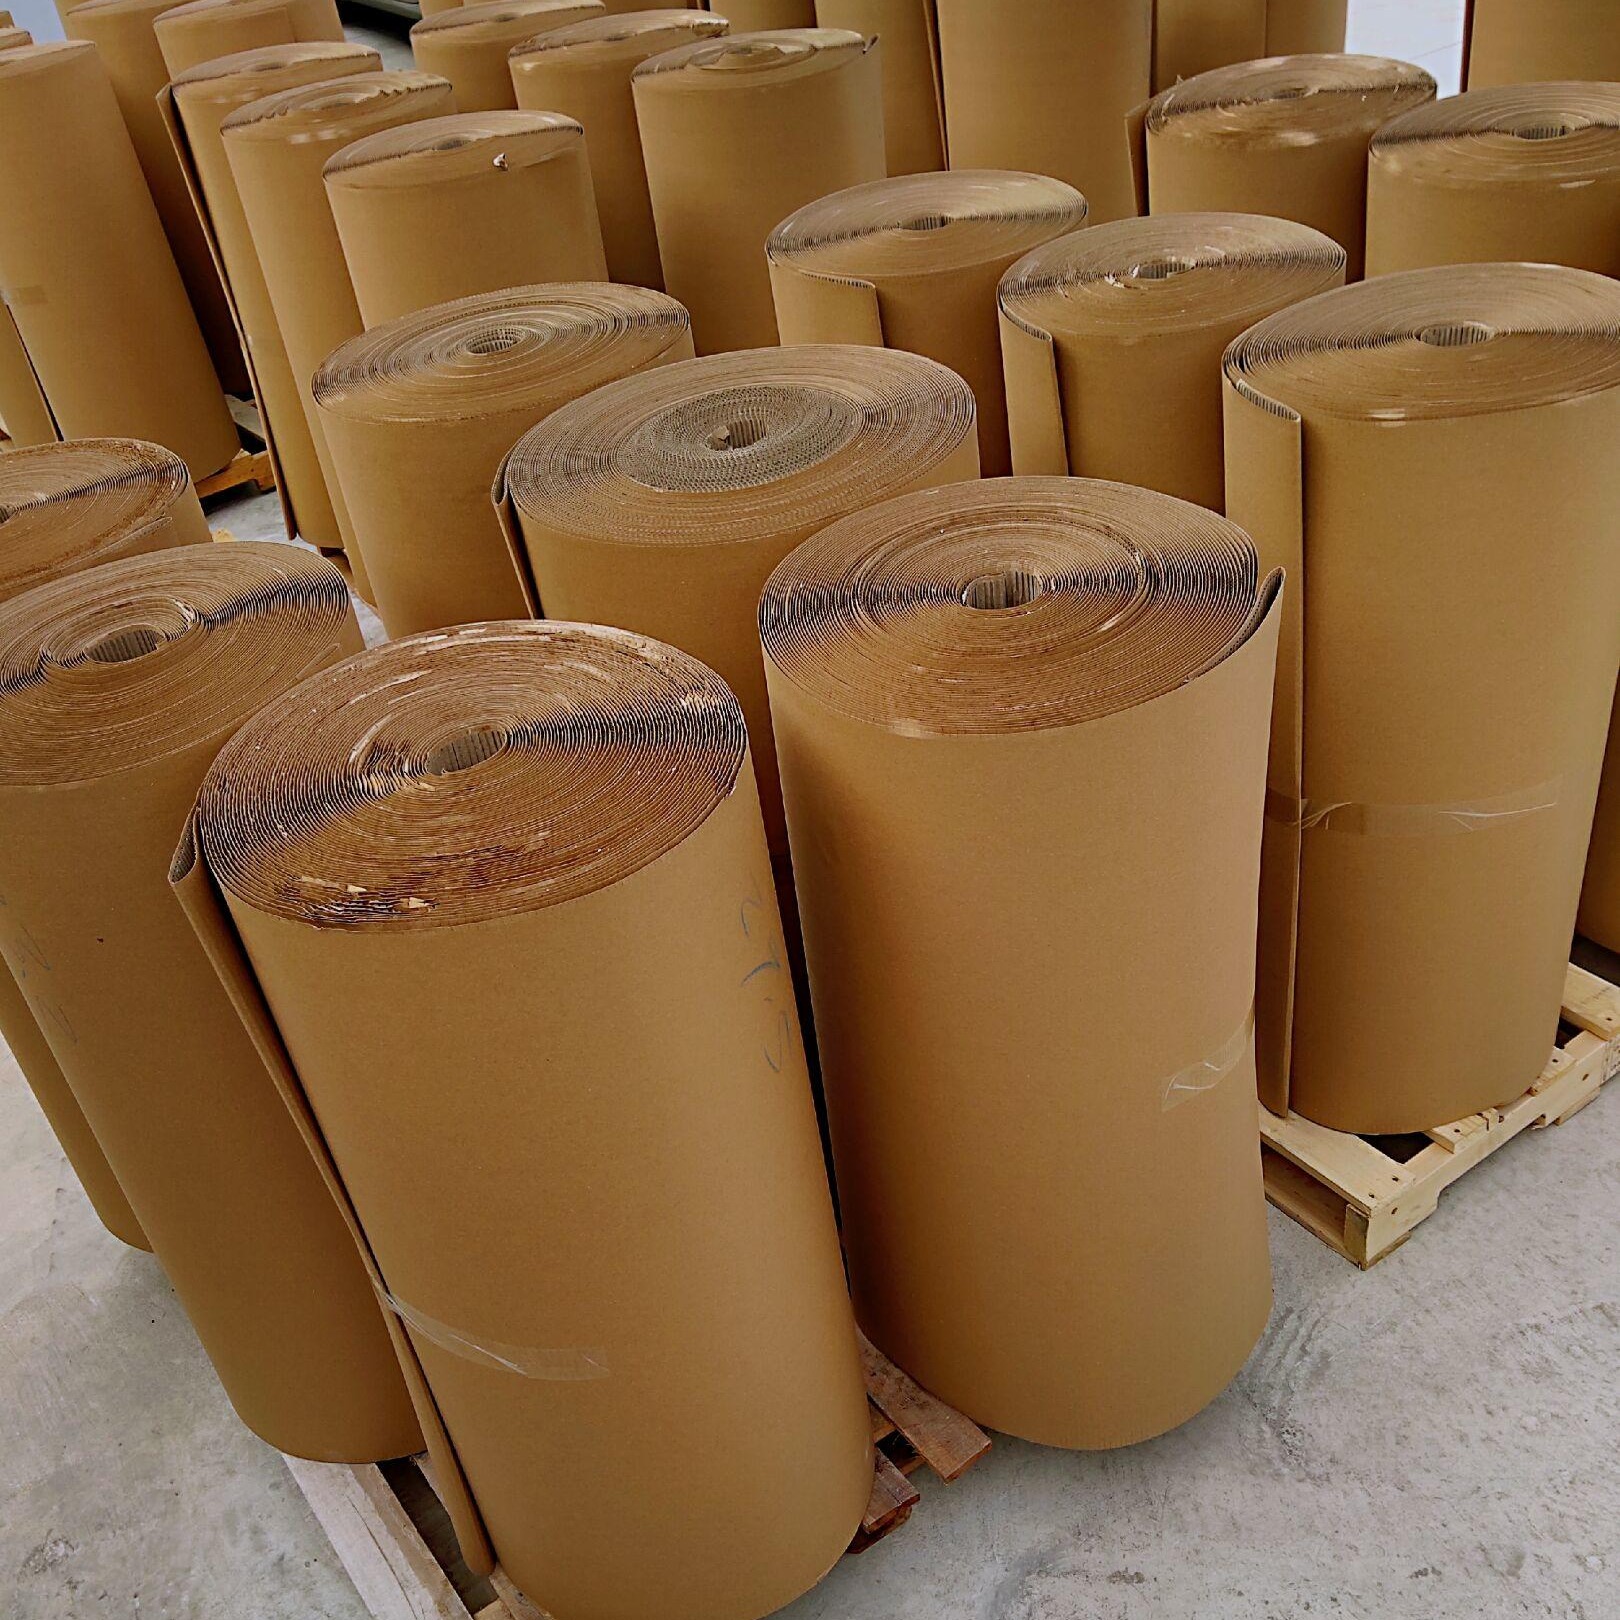 惠州瓦楞纸卷 惠州纸皮厂 家具包装纸皮 衣柜打包纸1.2-1.4米包装卷纸图片